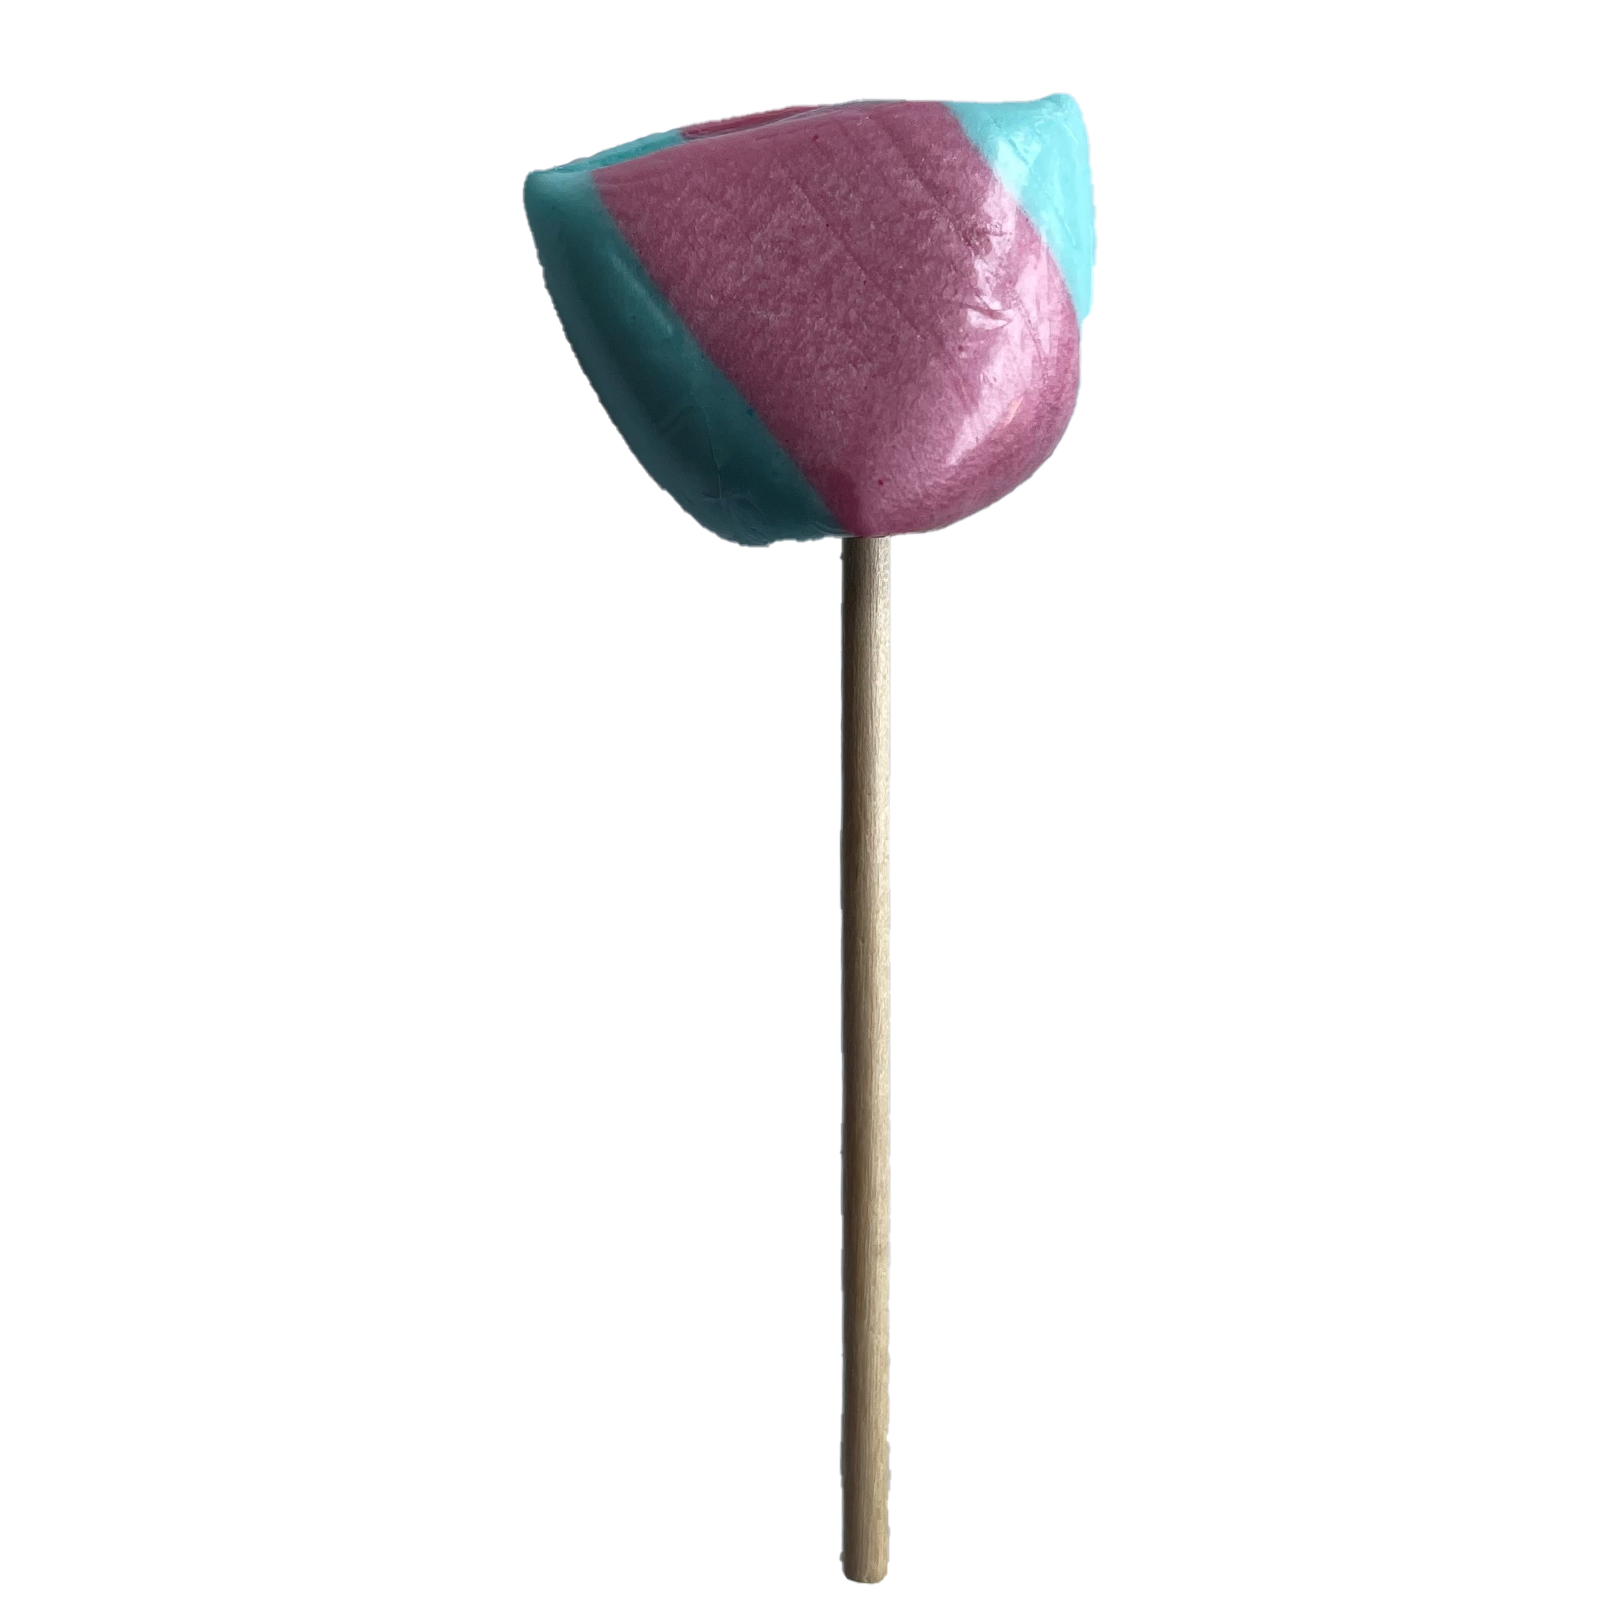 Sour Bubblegum Lollipop small